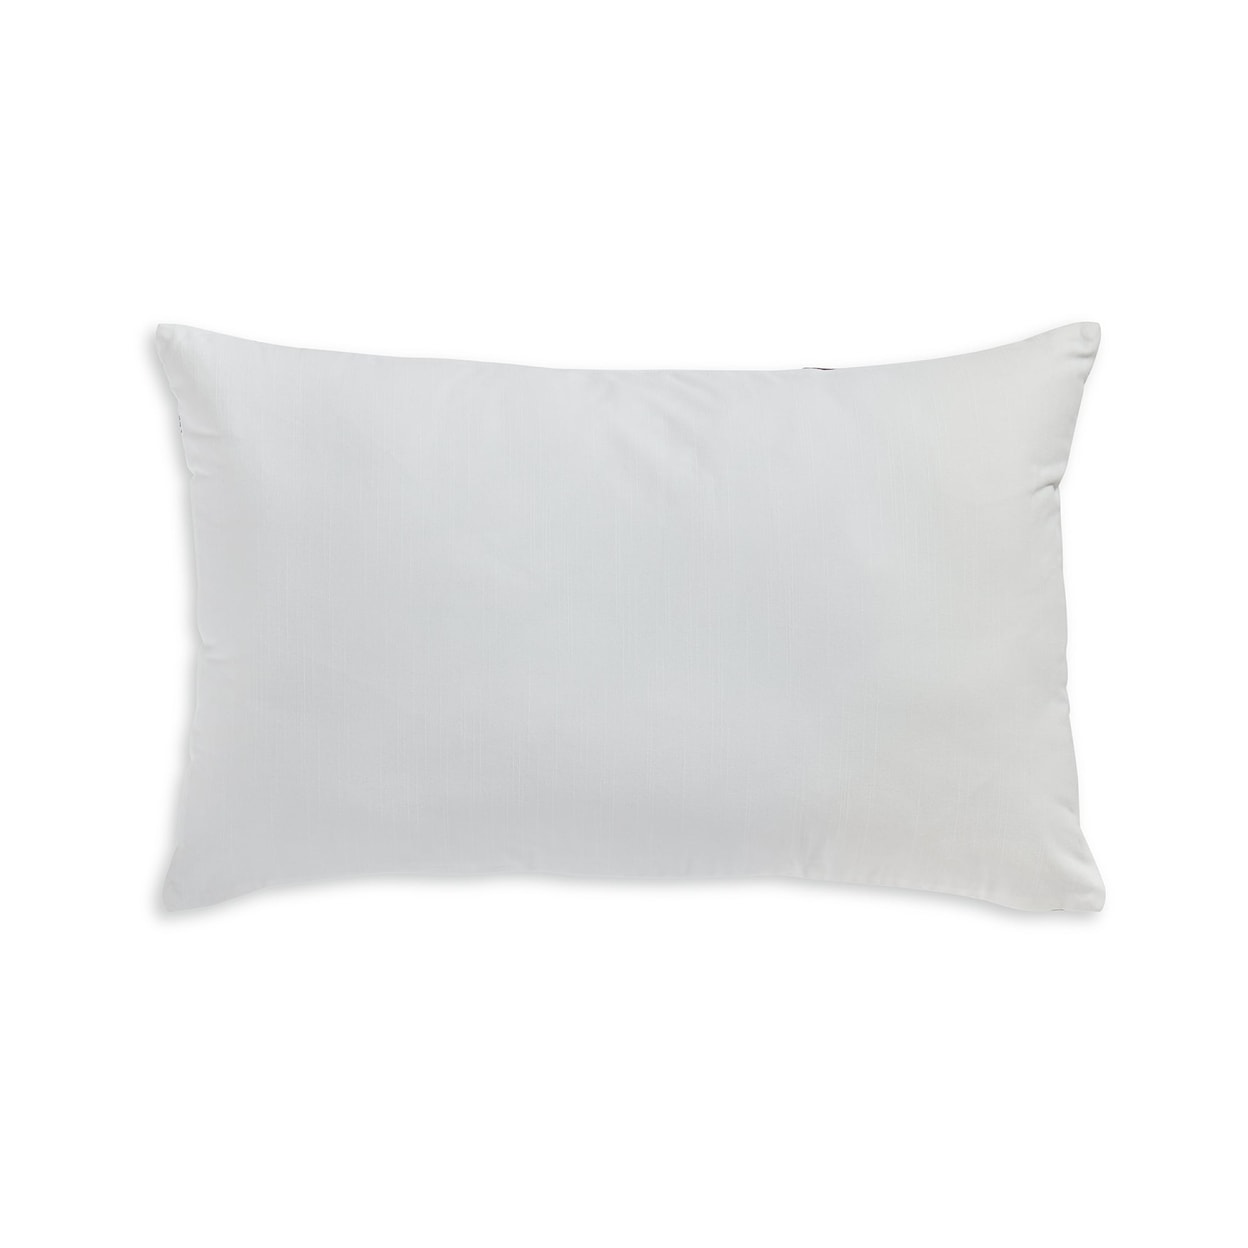 Signature Design Lanston Pillow